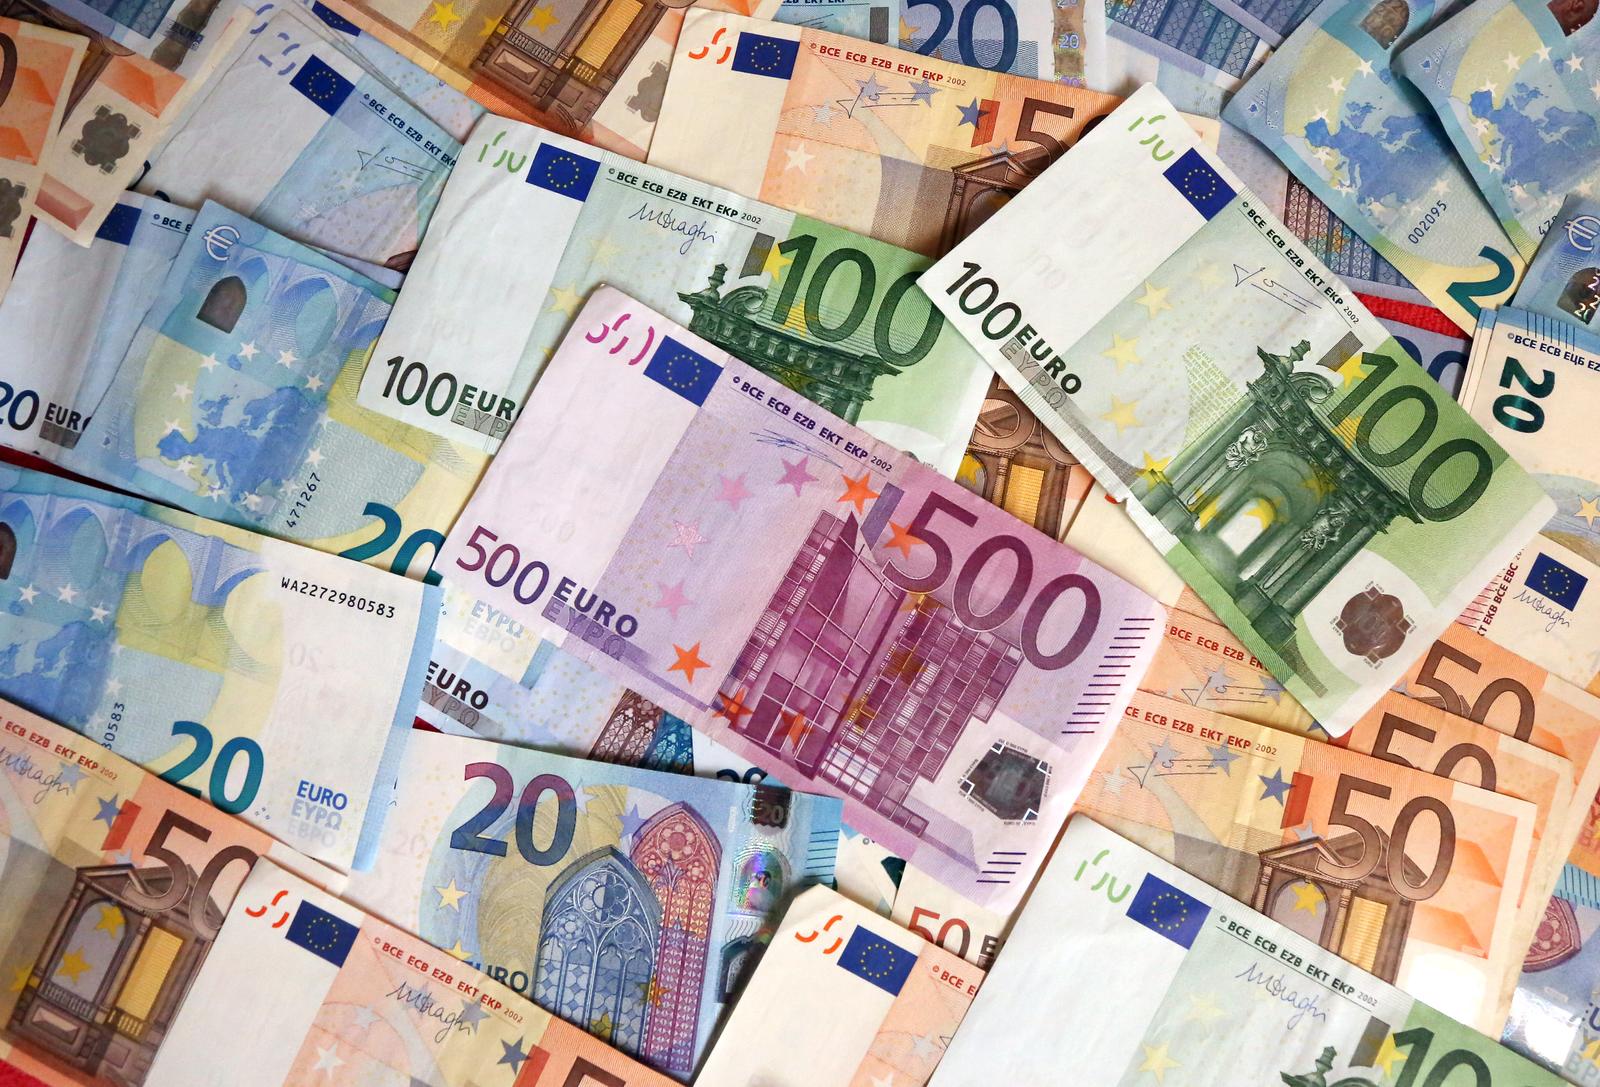 12.02.2016., Sibenik - Euro, jedinstvena europska valuta koja je u uporabi 1. sijecnja 1999. "nPhoto: Dusko Jaramaz/PIXSELL